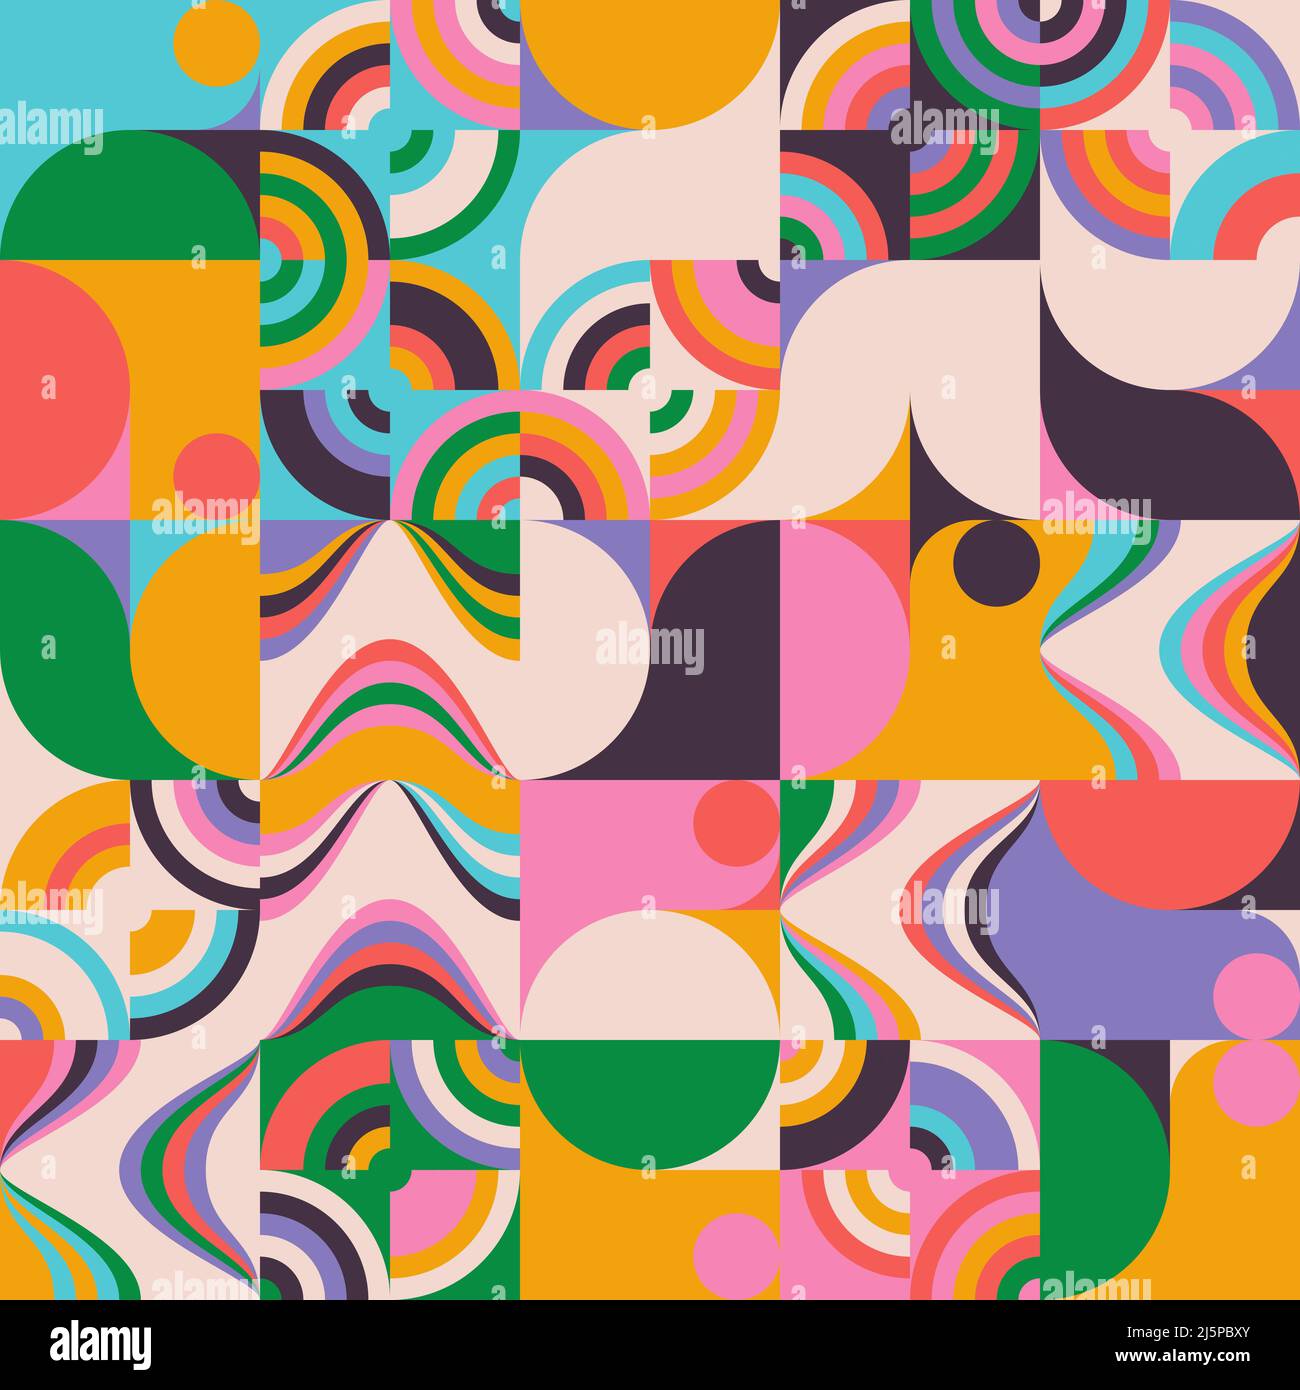 Disegni vettoriali astratti colorati realizzati con varie forme geometriche ed elementi. Grafica digitale per poster, copertina, arte, presentazione Illustrazione Vettoriale